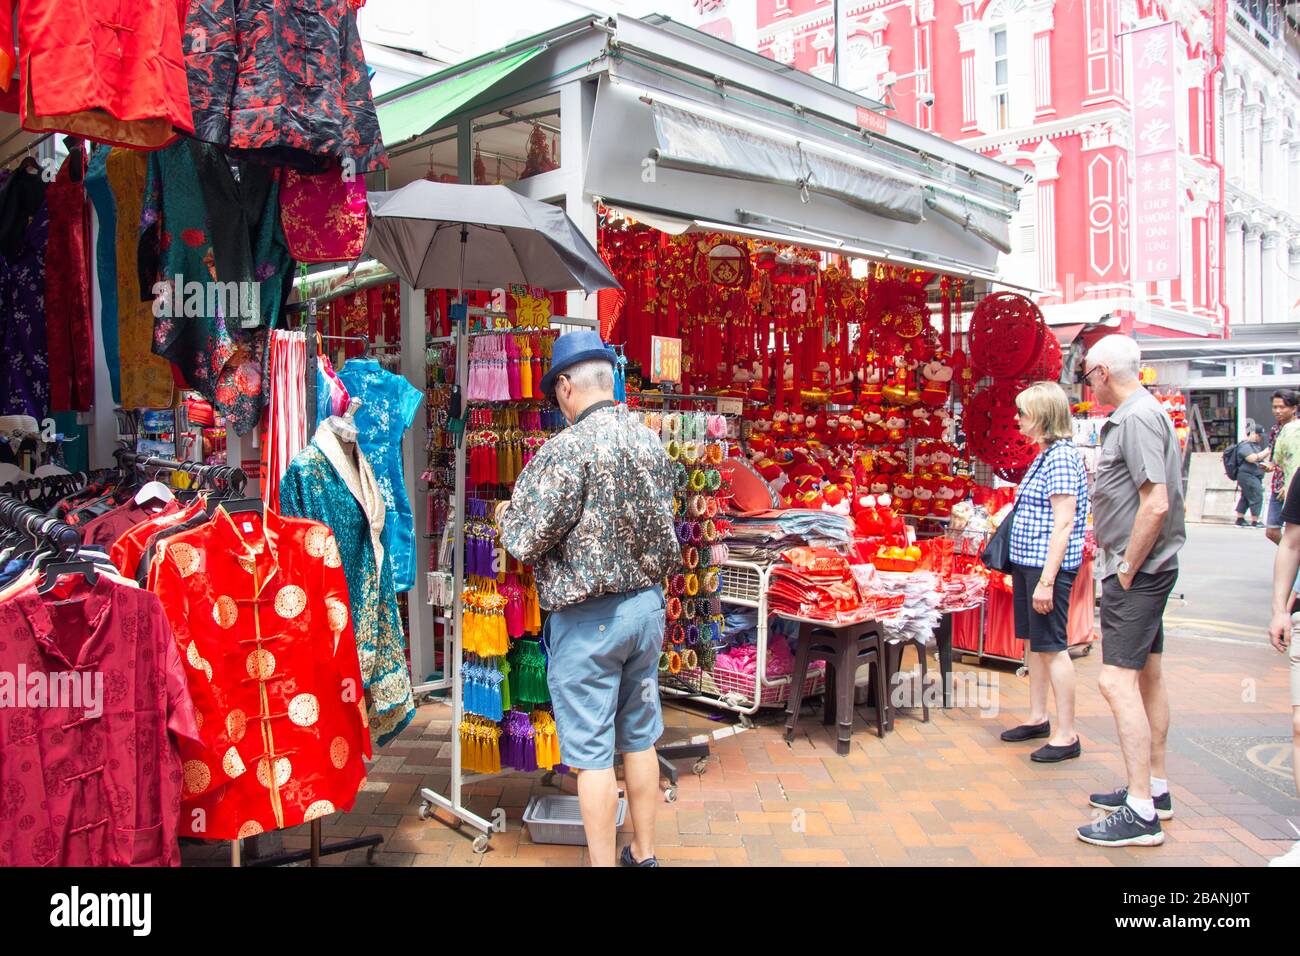 Tiendas de ropa y souvenirs chinos, Smith Street, Chinatown, Zona Central, República de Singapur Foto de stock